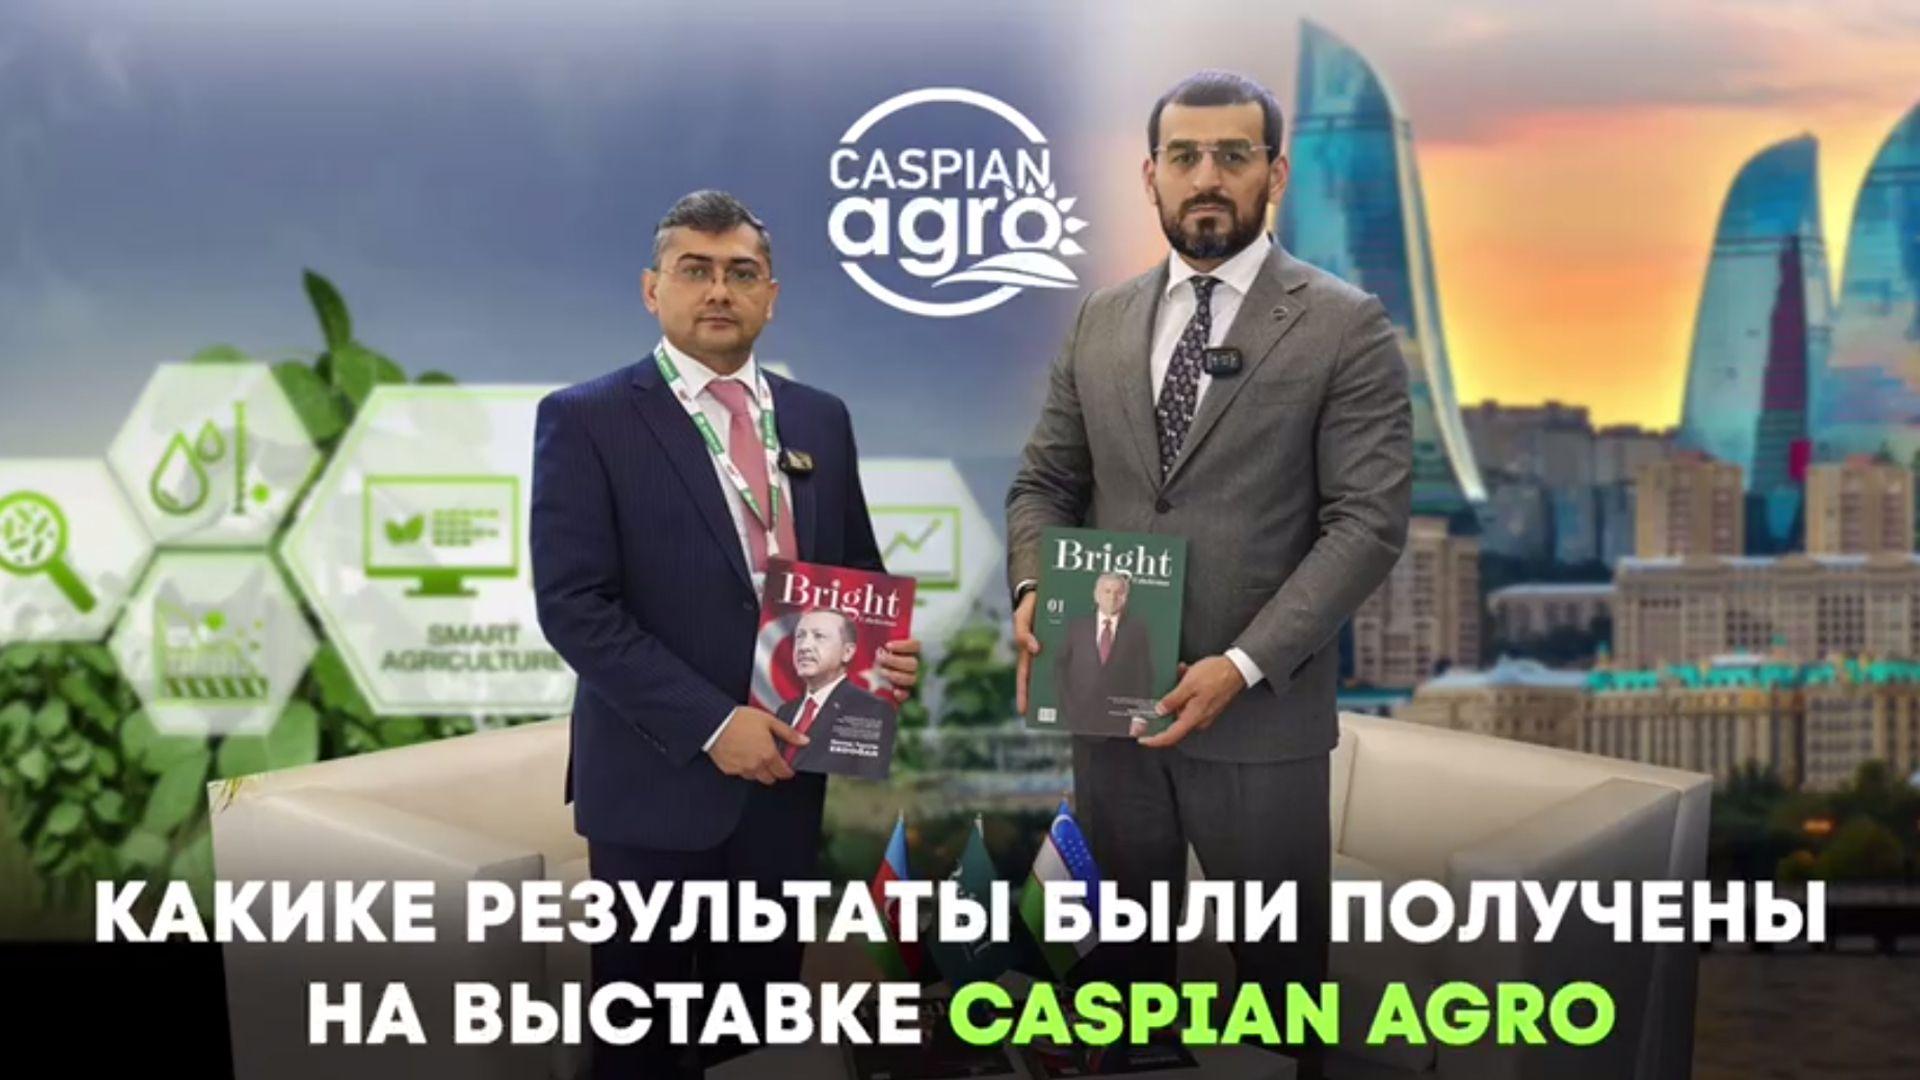 Caspian Agro ko'rgazmasida qanday natijalarga erishildi?